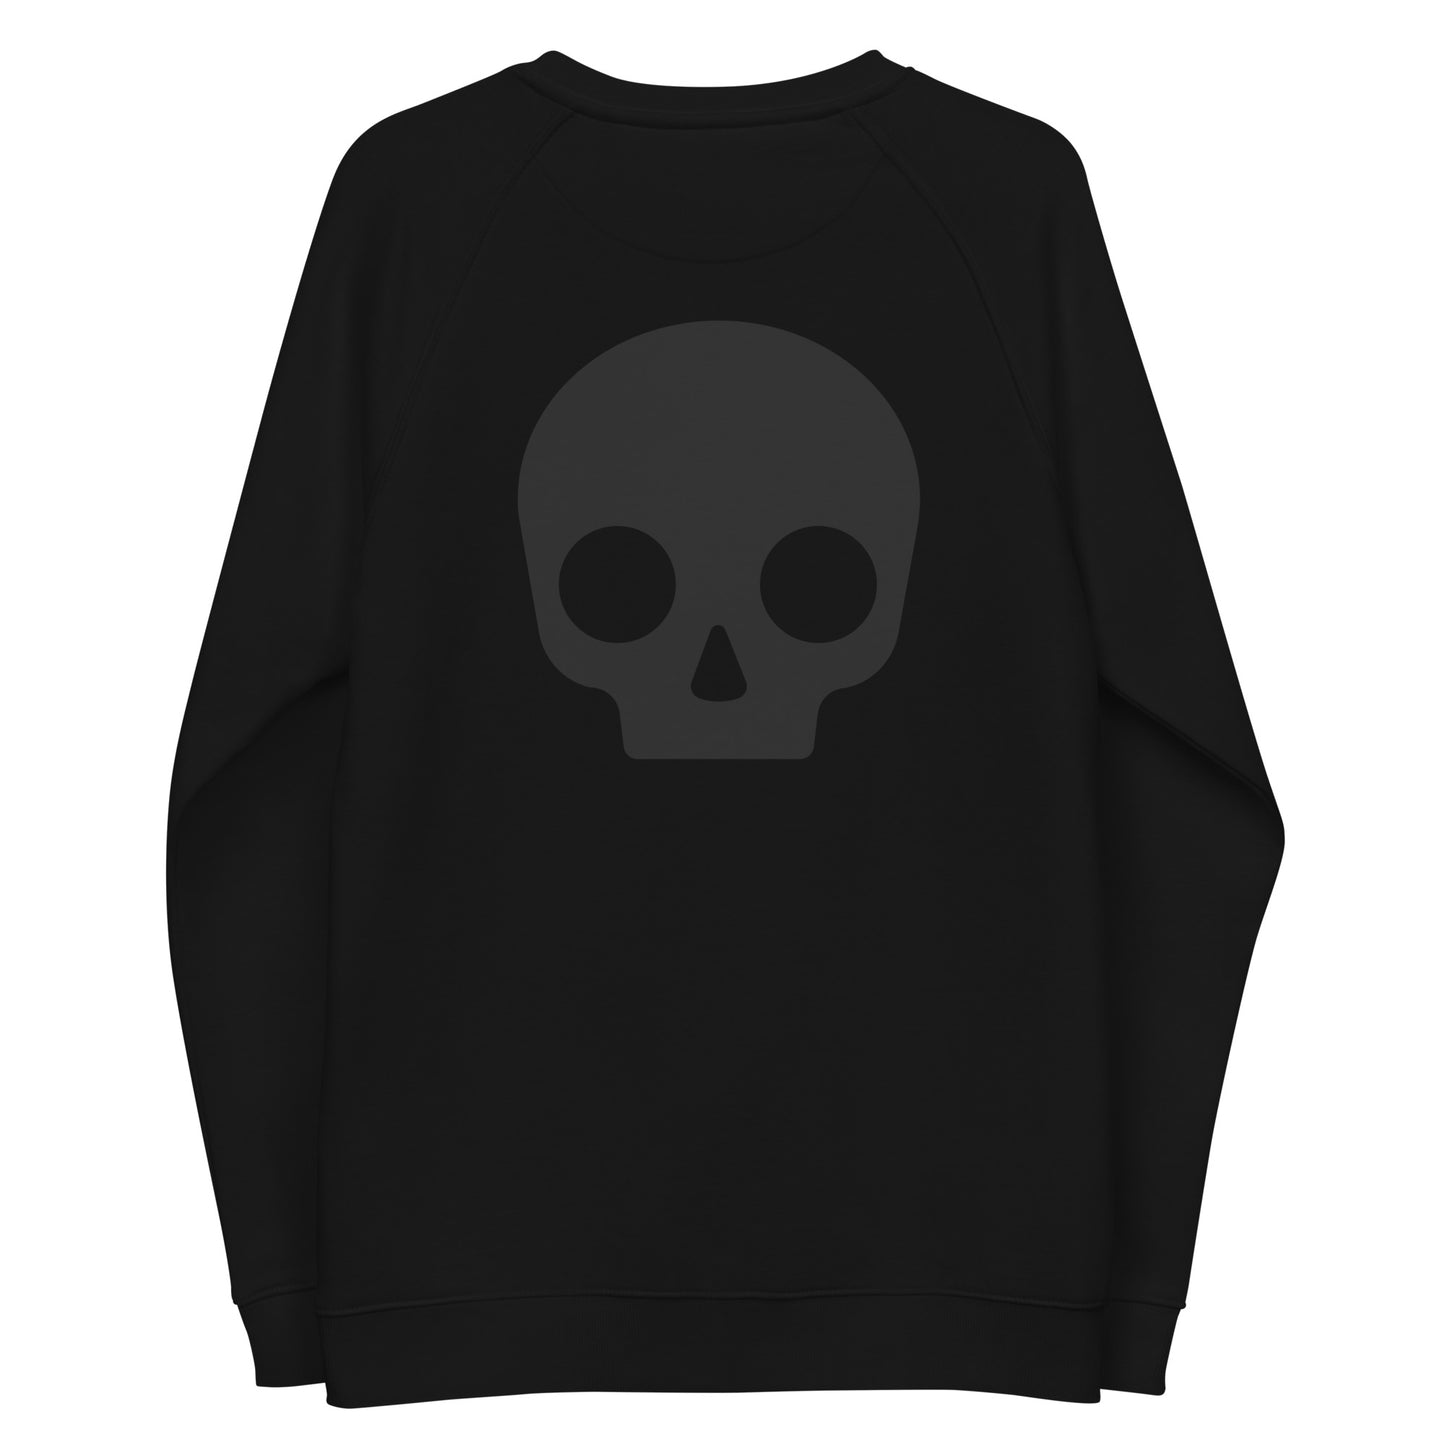 DO THE BEST Black Cotton Fleece Sweatshirt | Reglan sleeves| ONLYZ3AL |coolest  Black sweatshirt with design